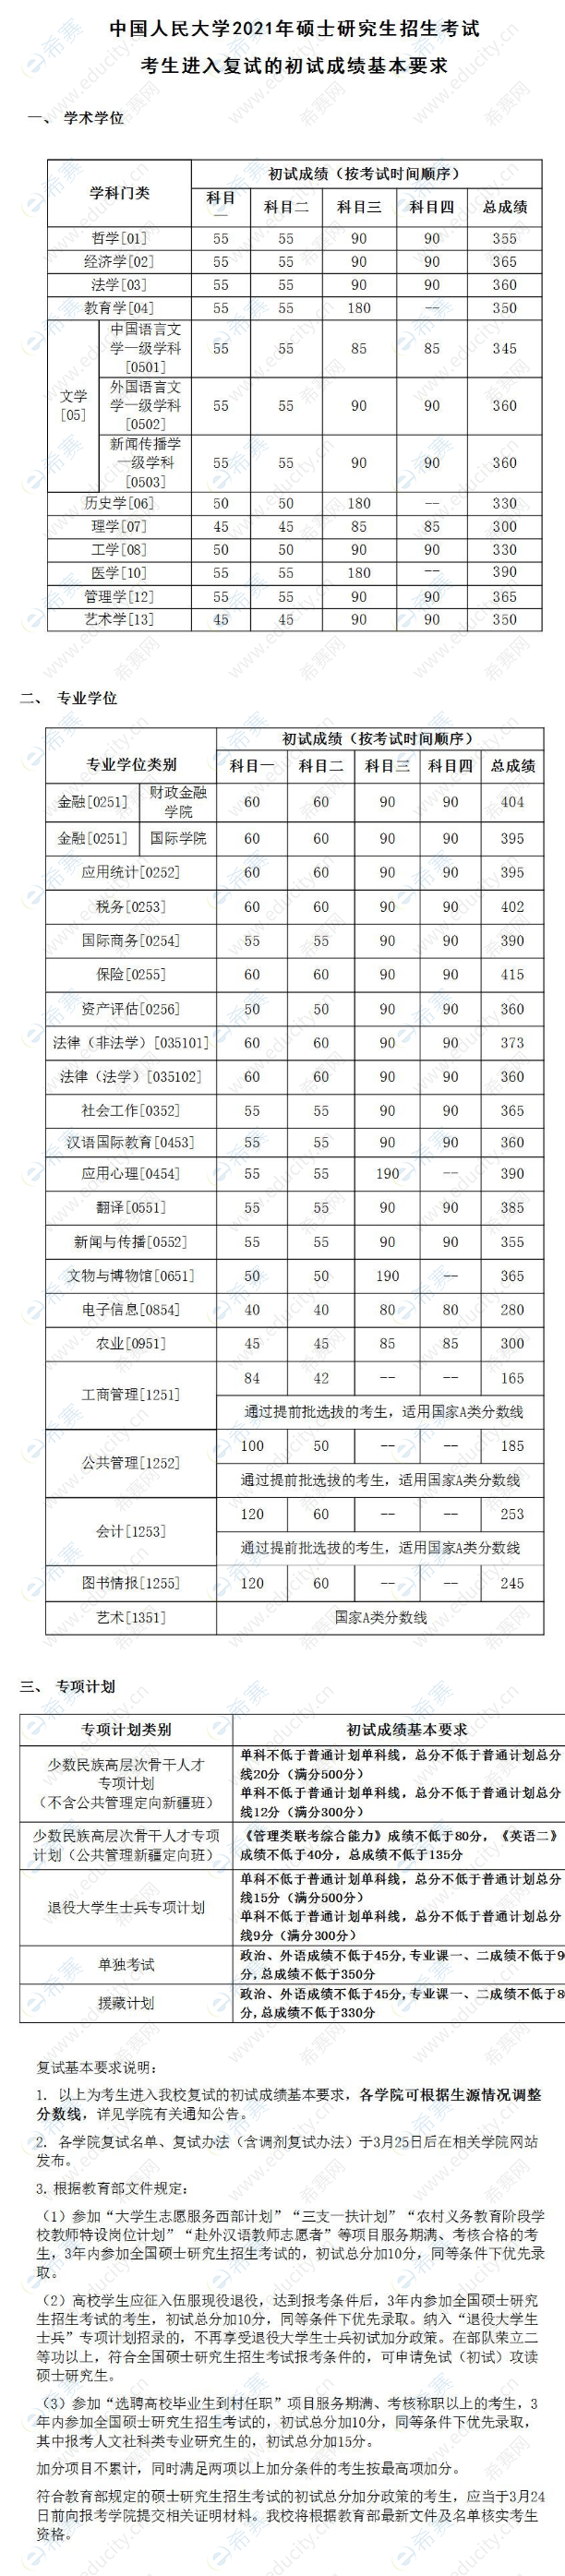 中国人民大学2021年考研英语复试分数线.png